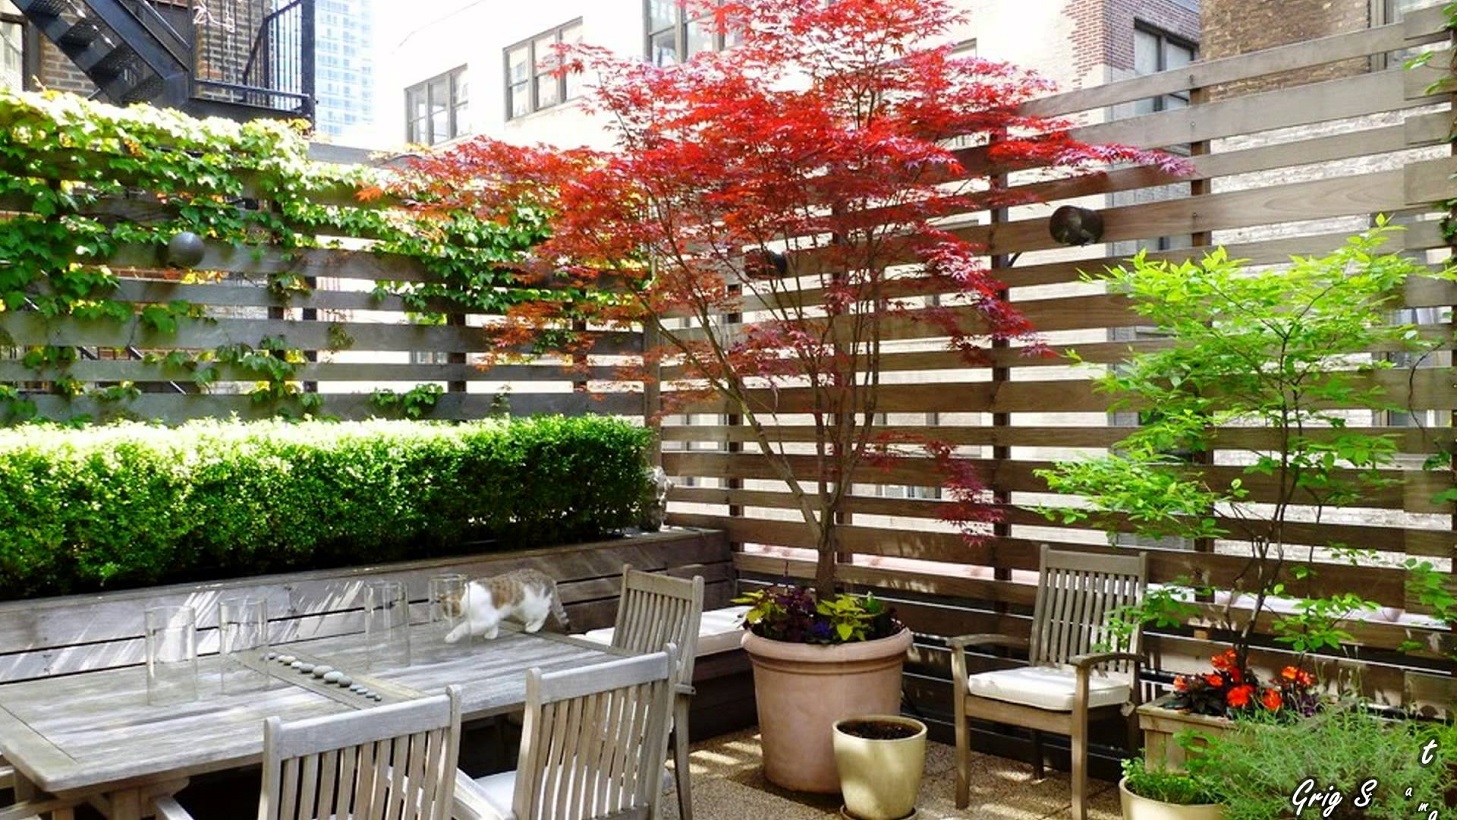 Come scegliere le piante rampicanti da esterno per un balcone o un patio?